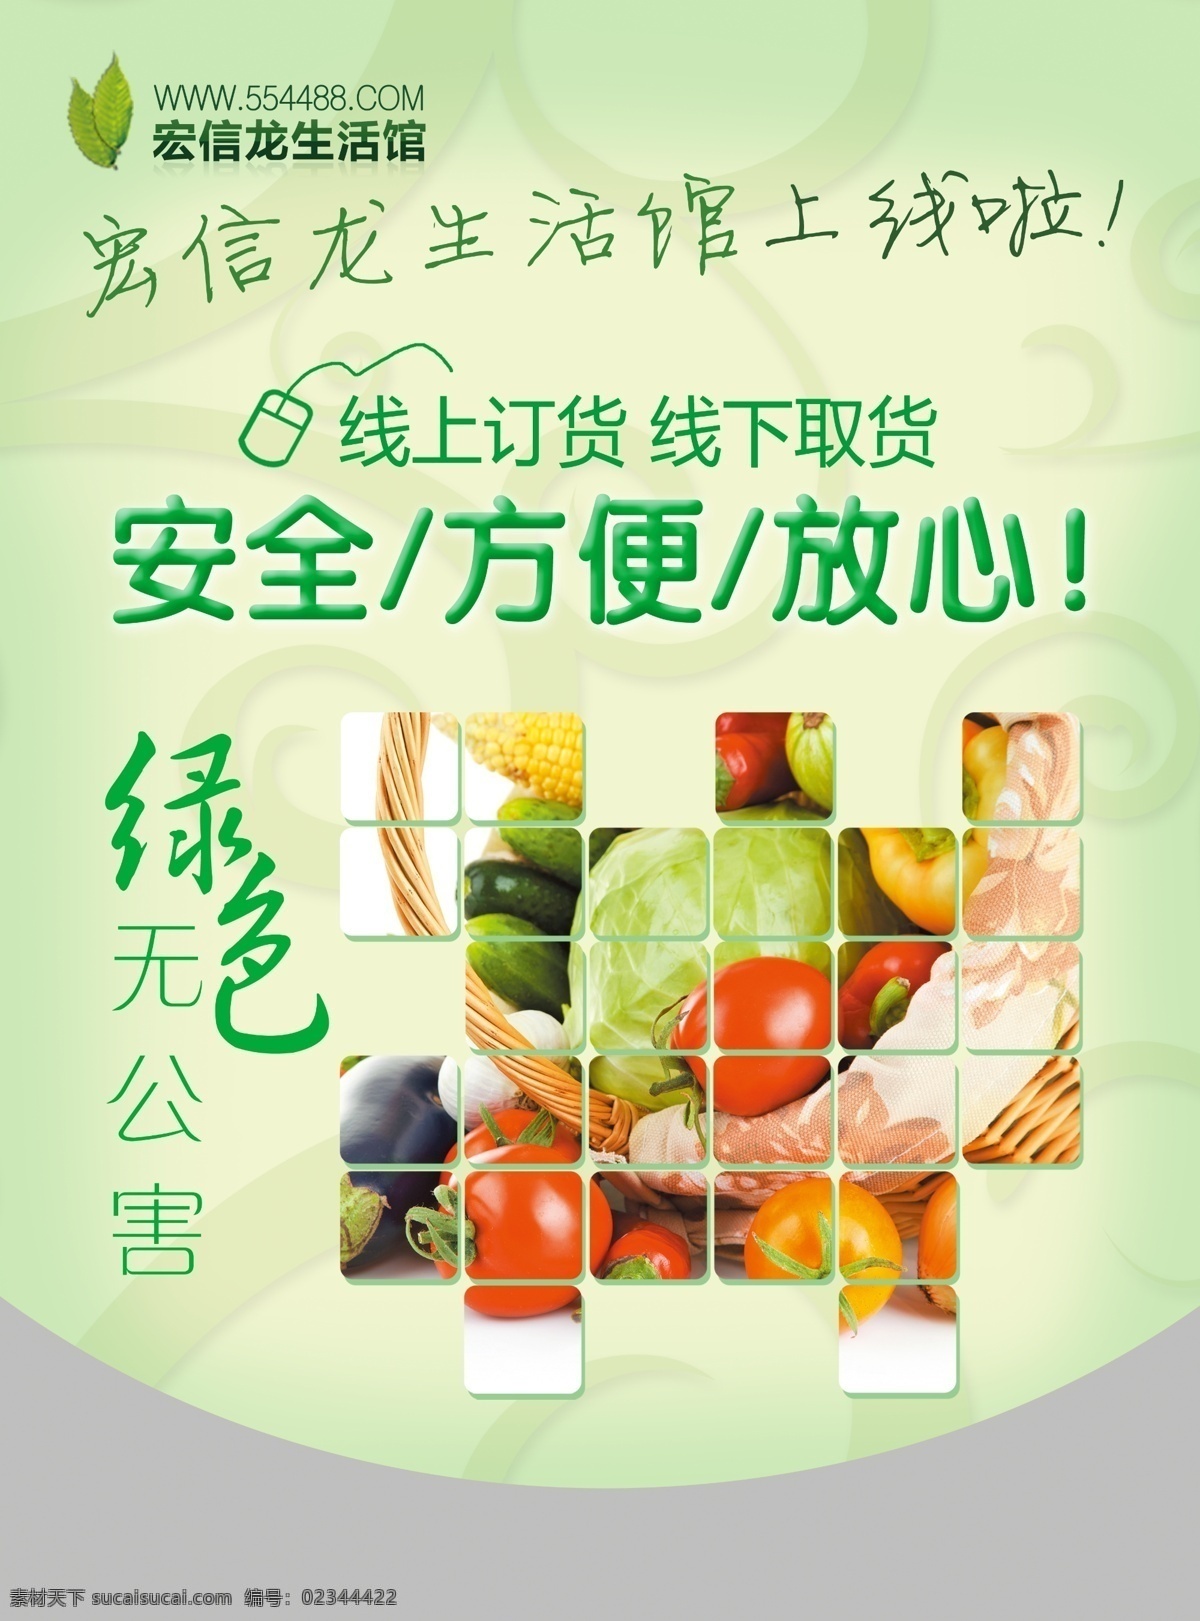 广告 活动 海报 绿色 农产品 水果 设计素材